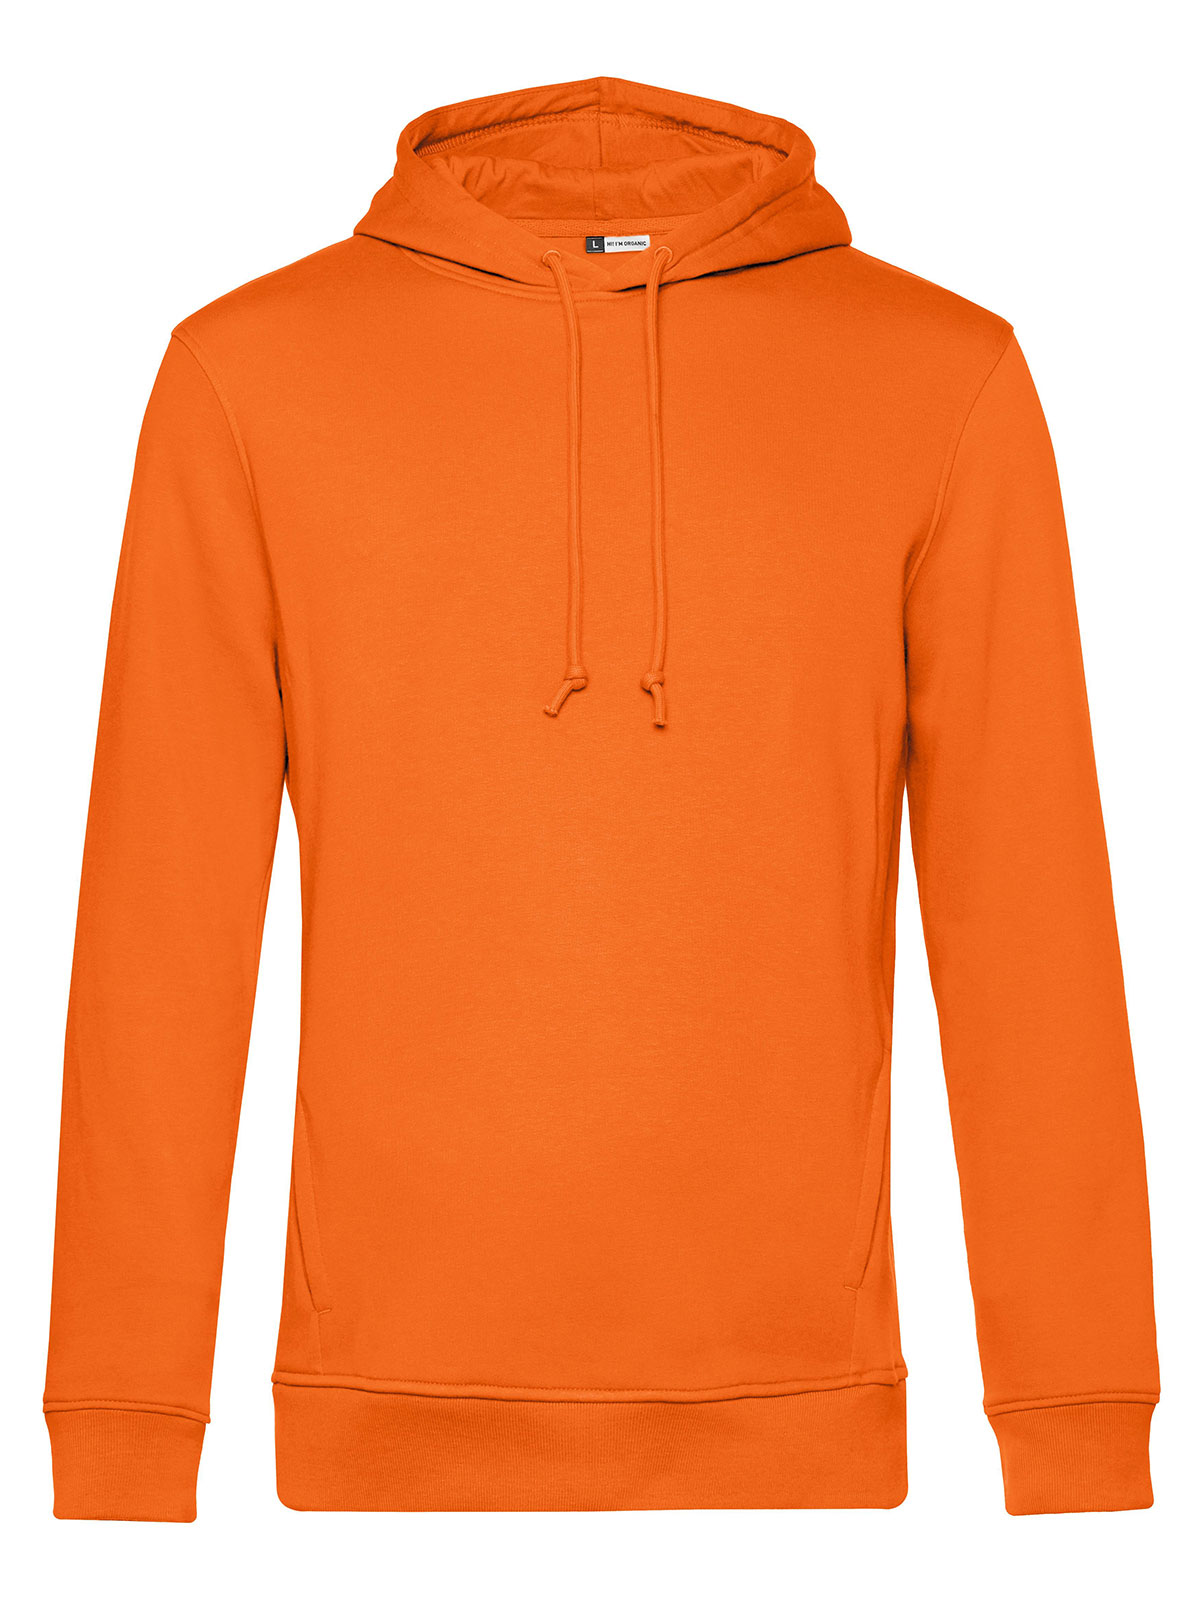 inspire-hooded-pure-orange.webp